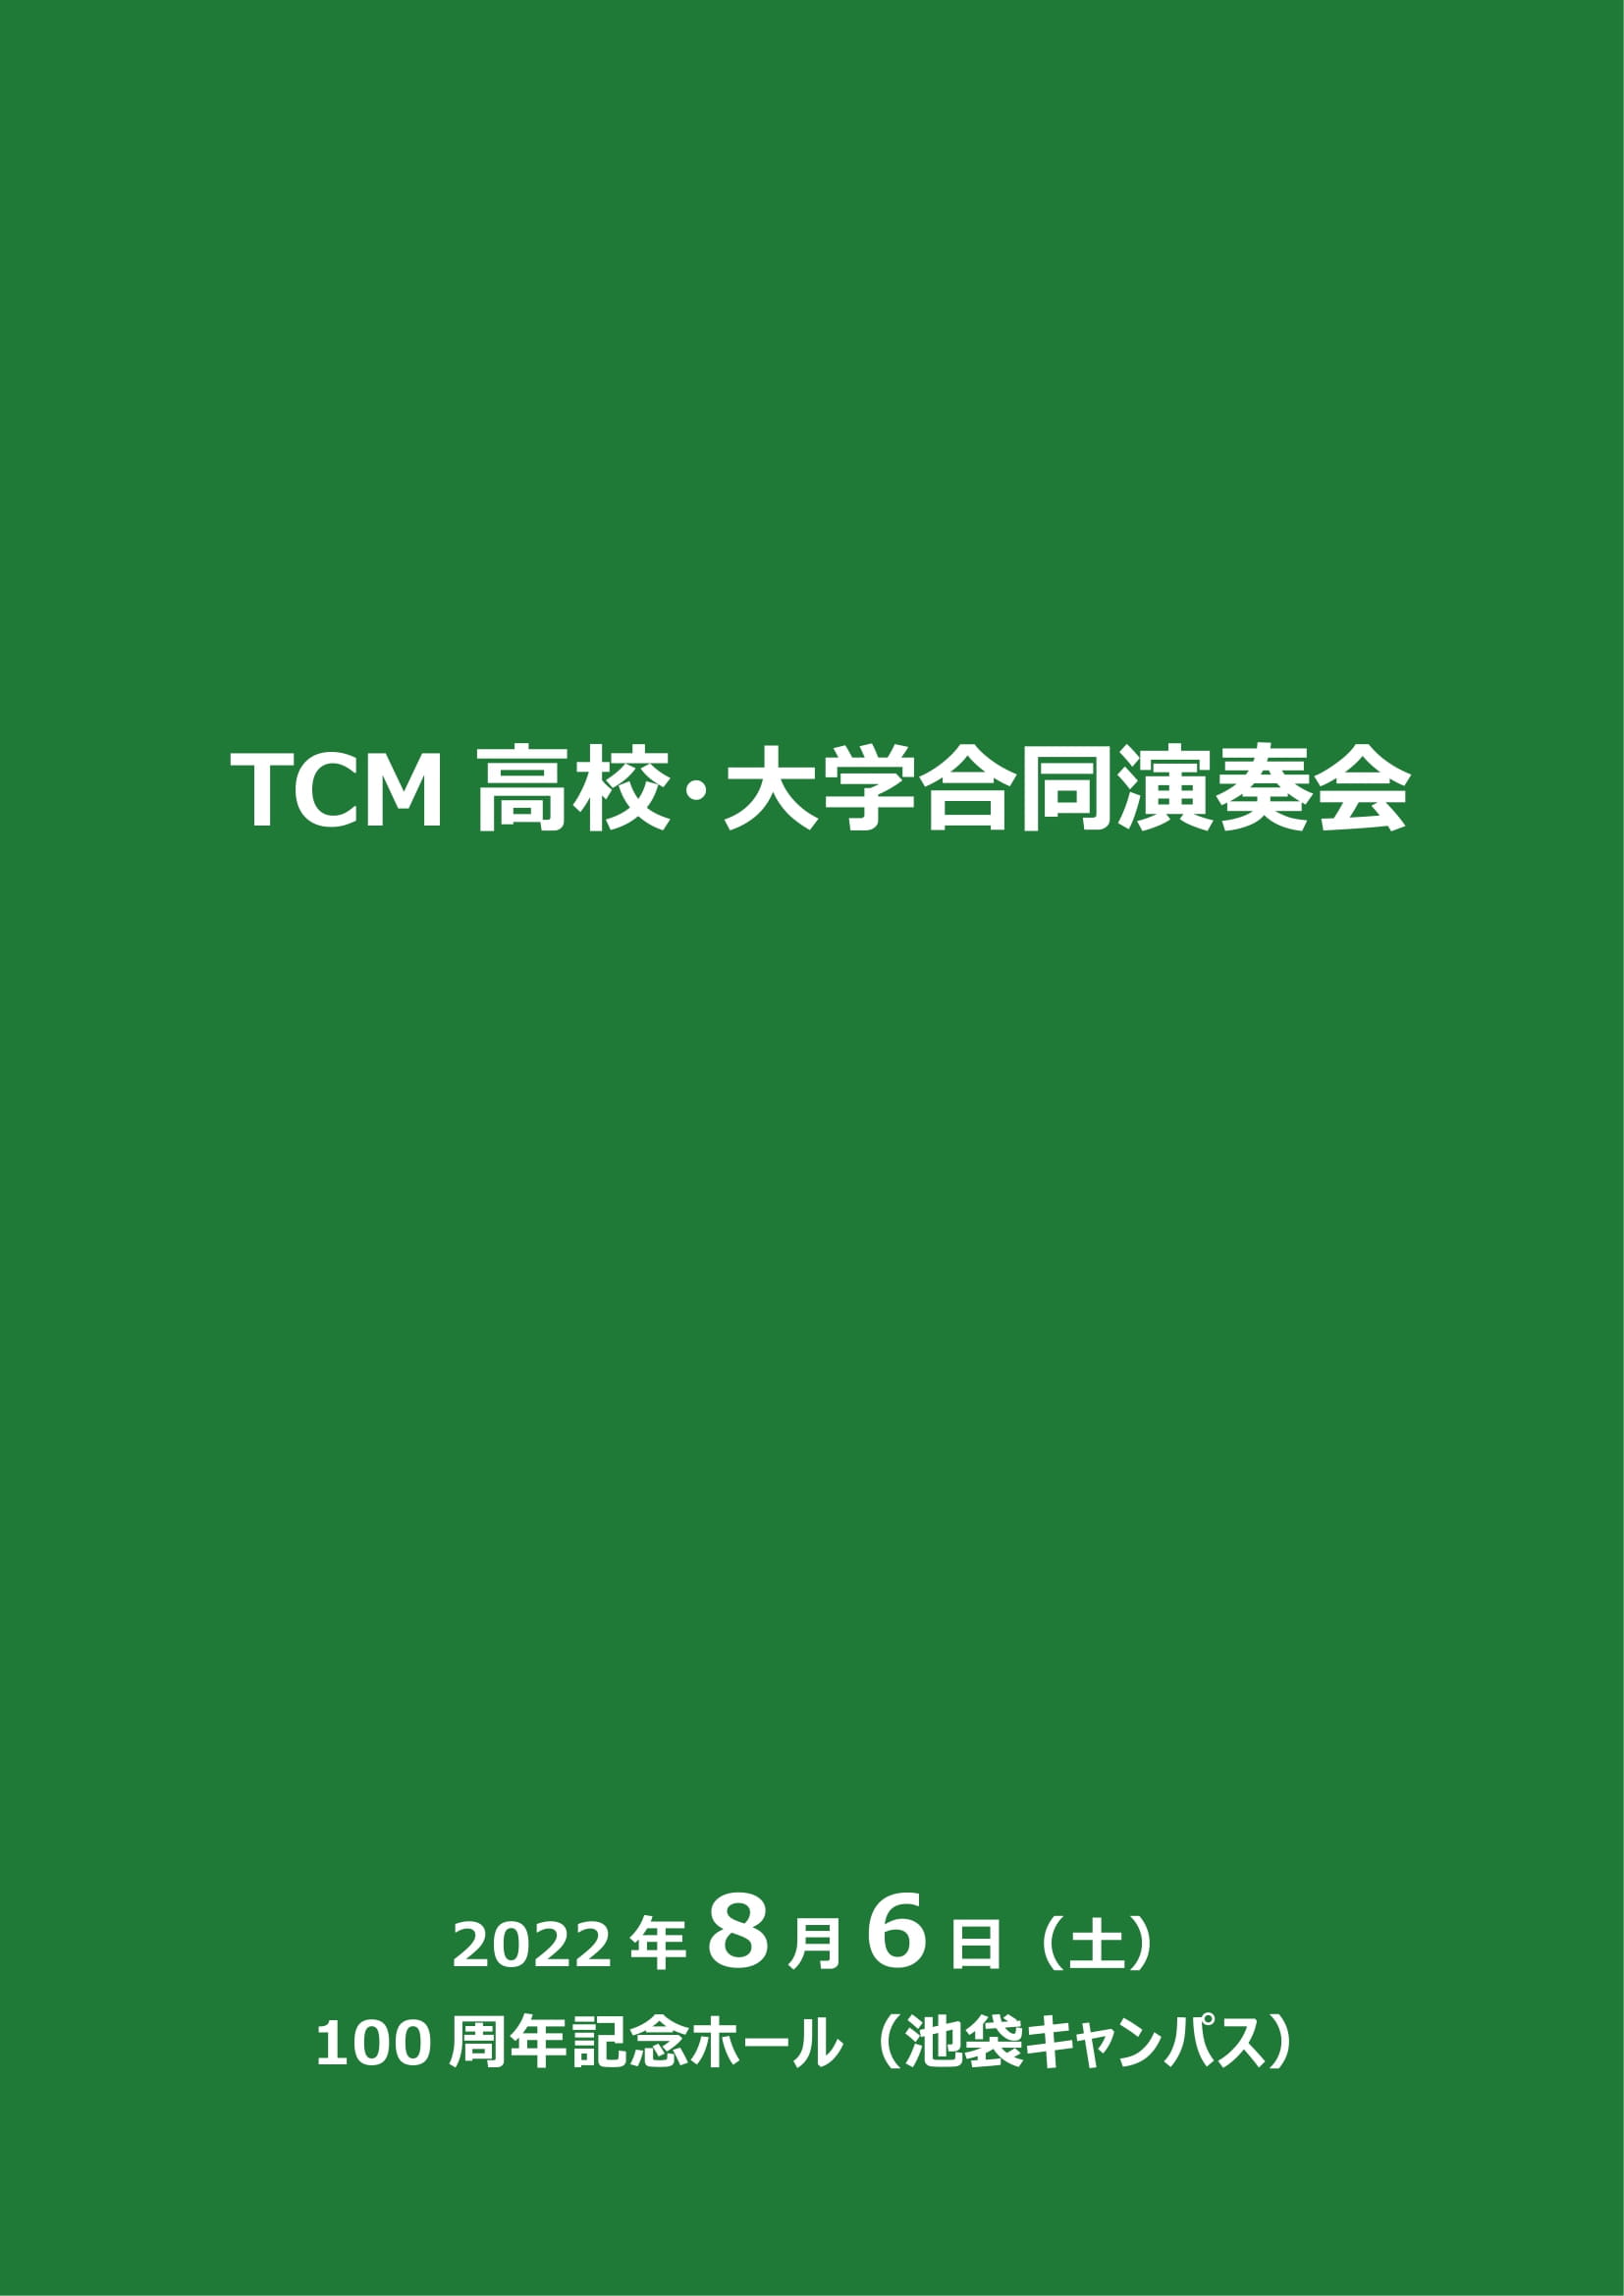 TCM高校・大学合同演奏会